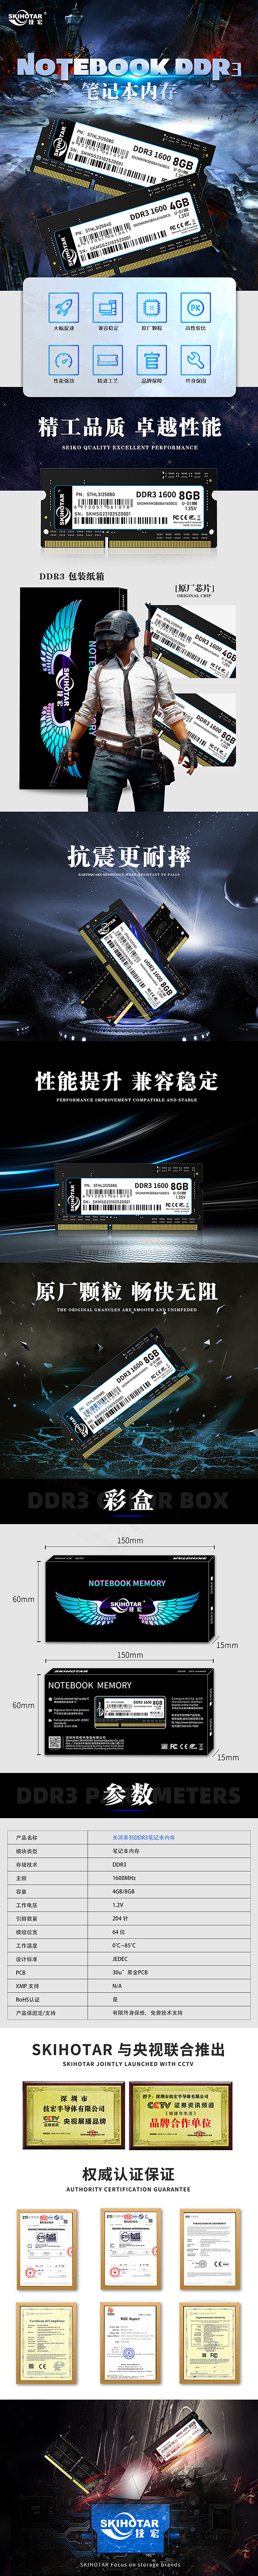 DDR3笔记本详情--中文.jpg